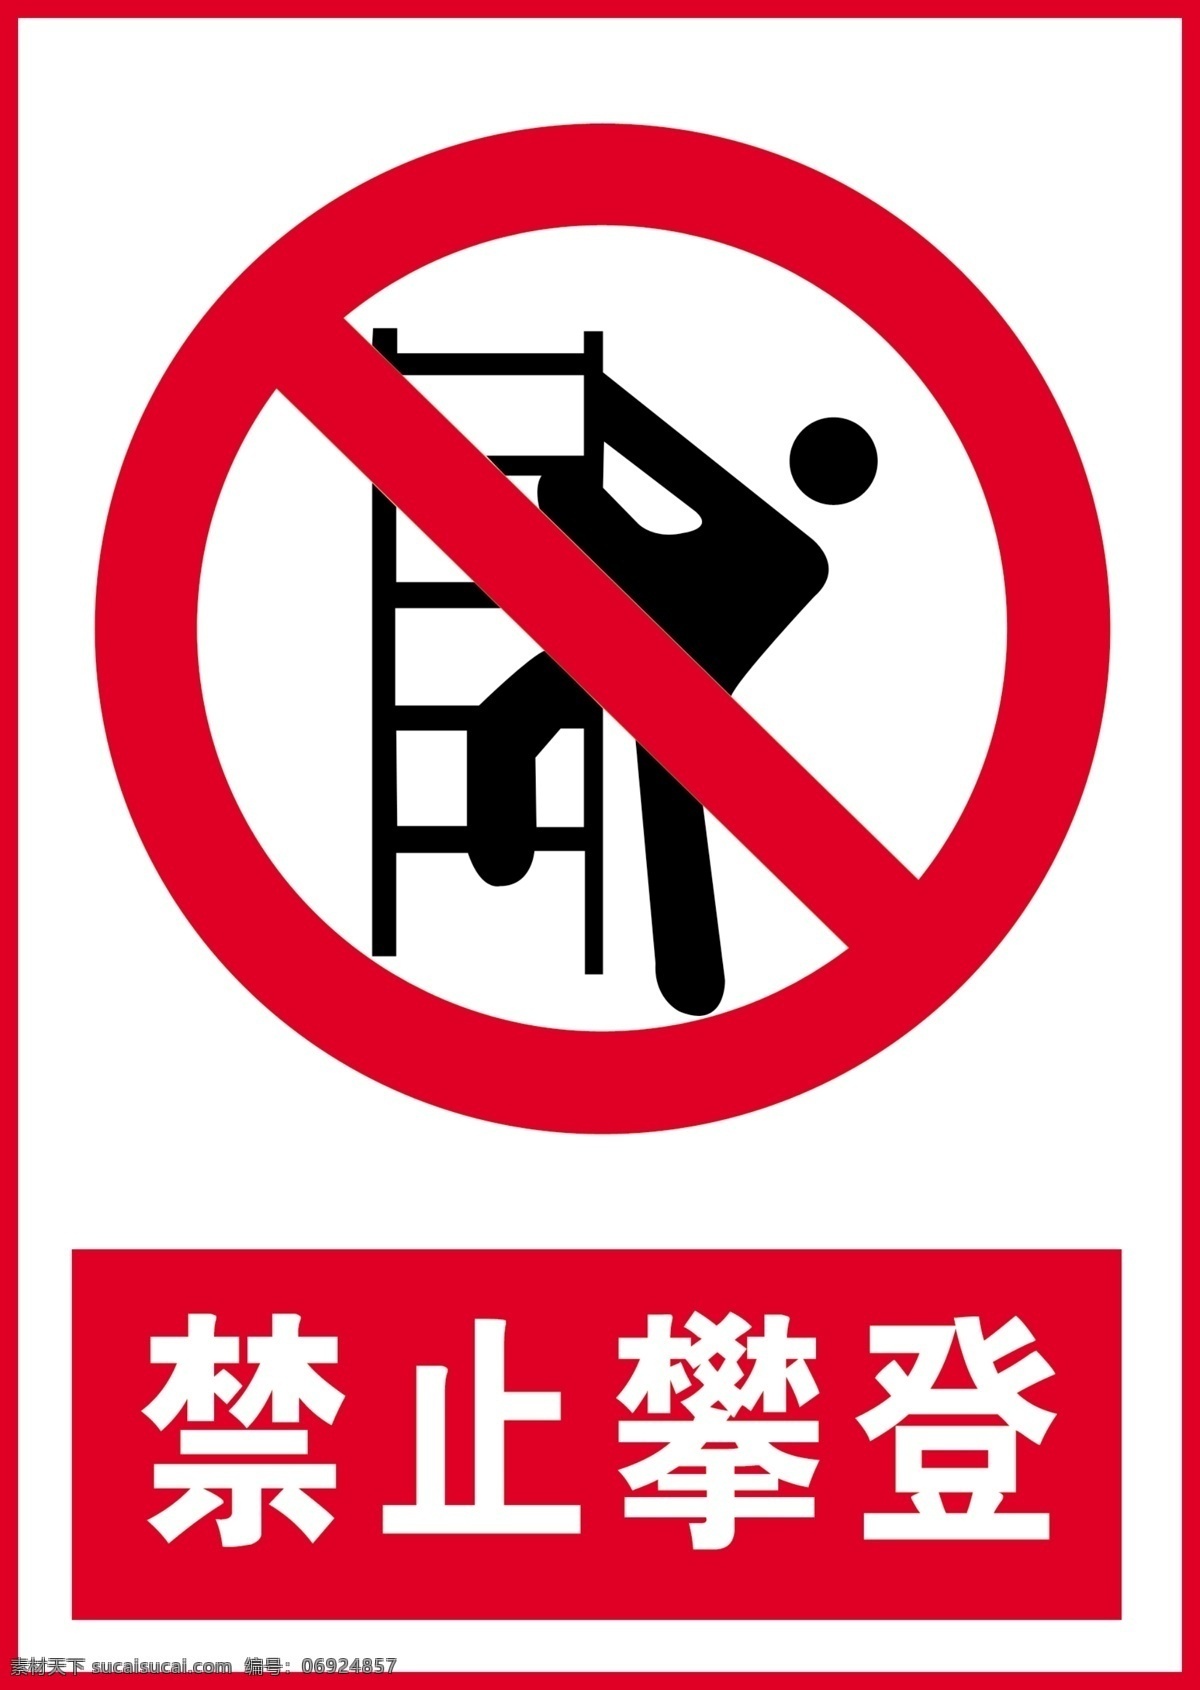 不许攀登 不要攀登 禁止攀登标示 安全生产标示 安全标识